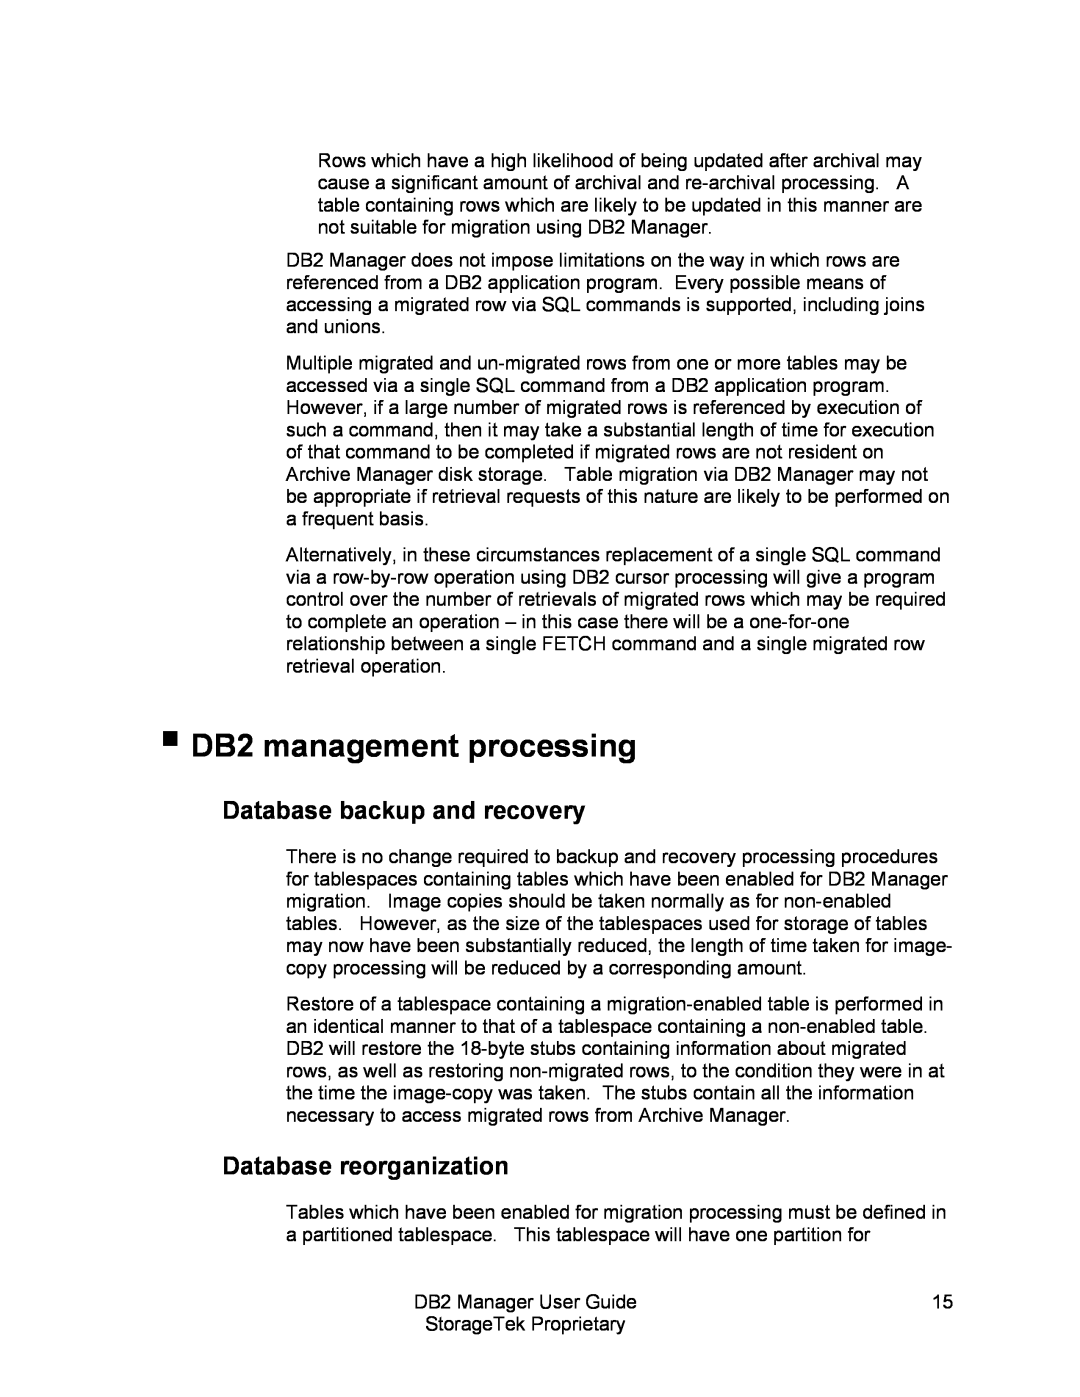 StorageTek 312564001 manual DB2 management processing, Database backup and recovery, Database reorganization 